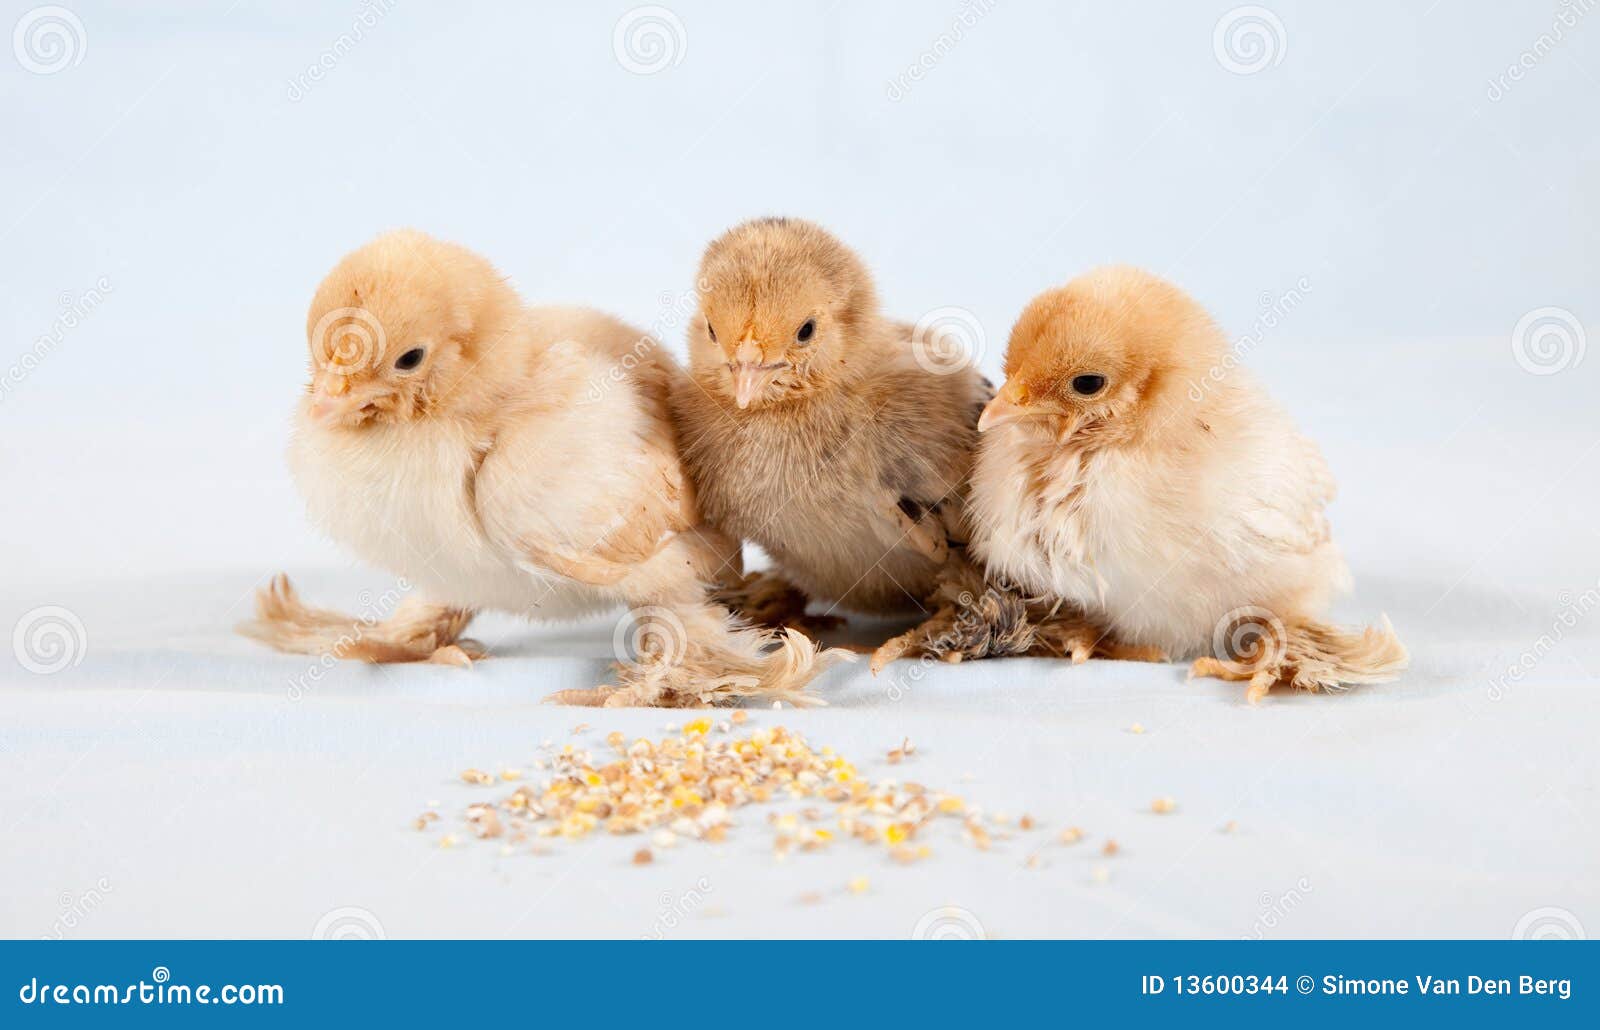 Poulet de chéri. Trois babychickens se reposant ainsi que de la nourriture devant eux